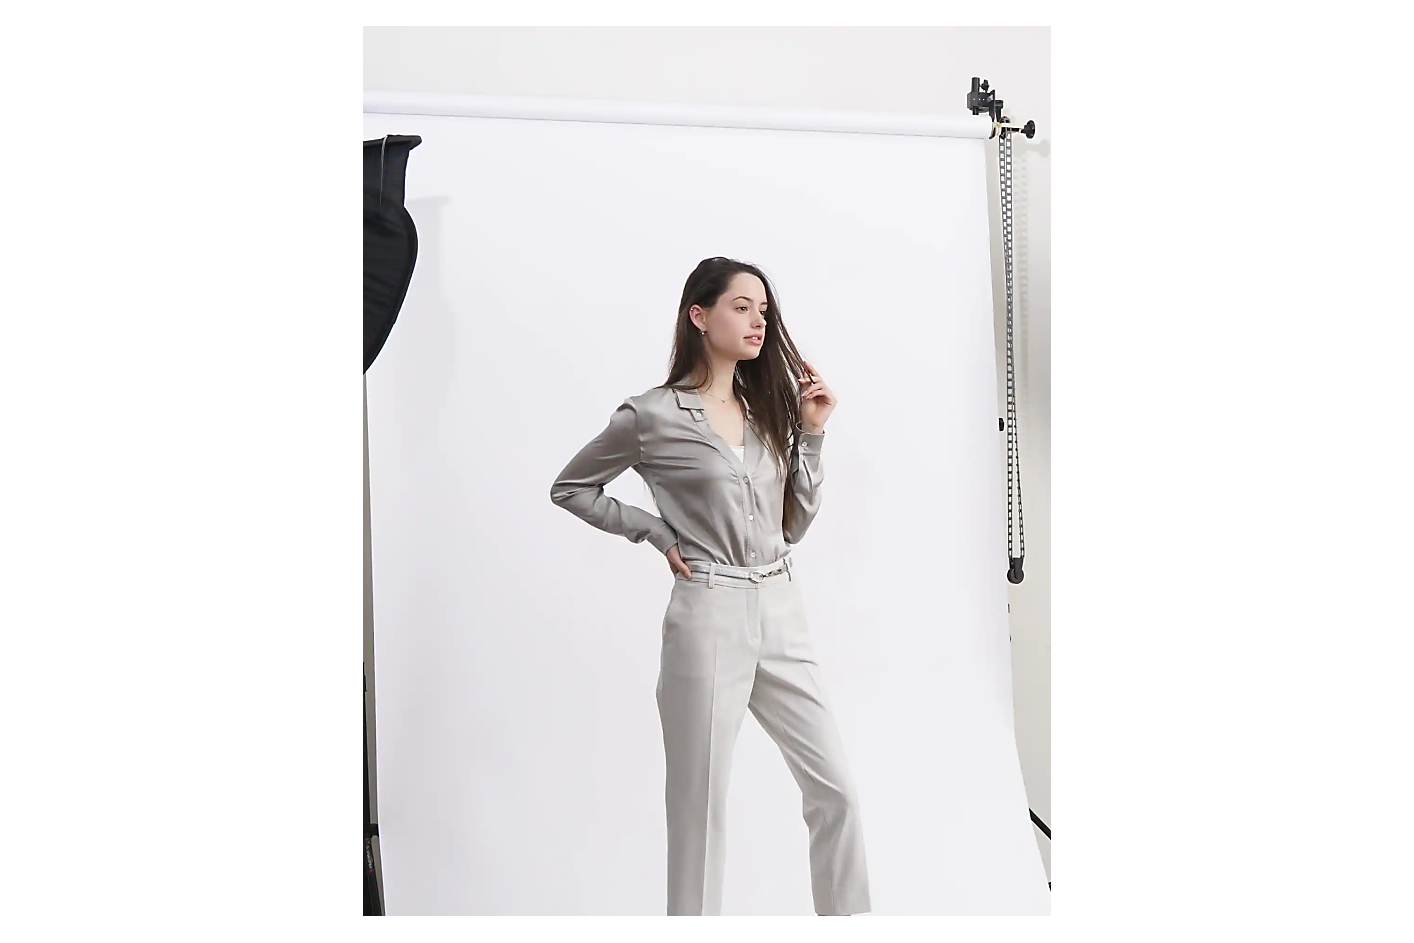 一位身穿淺灰色服裝的女士在攝影棚的白色背景前擺出姿勢。